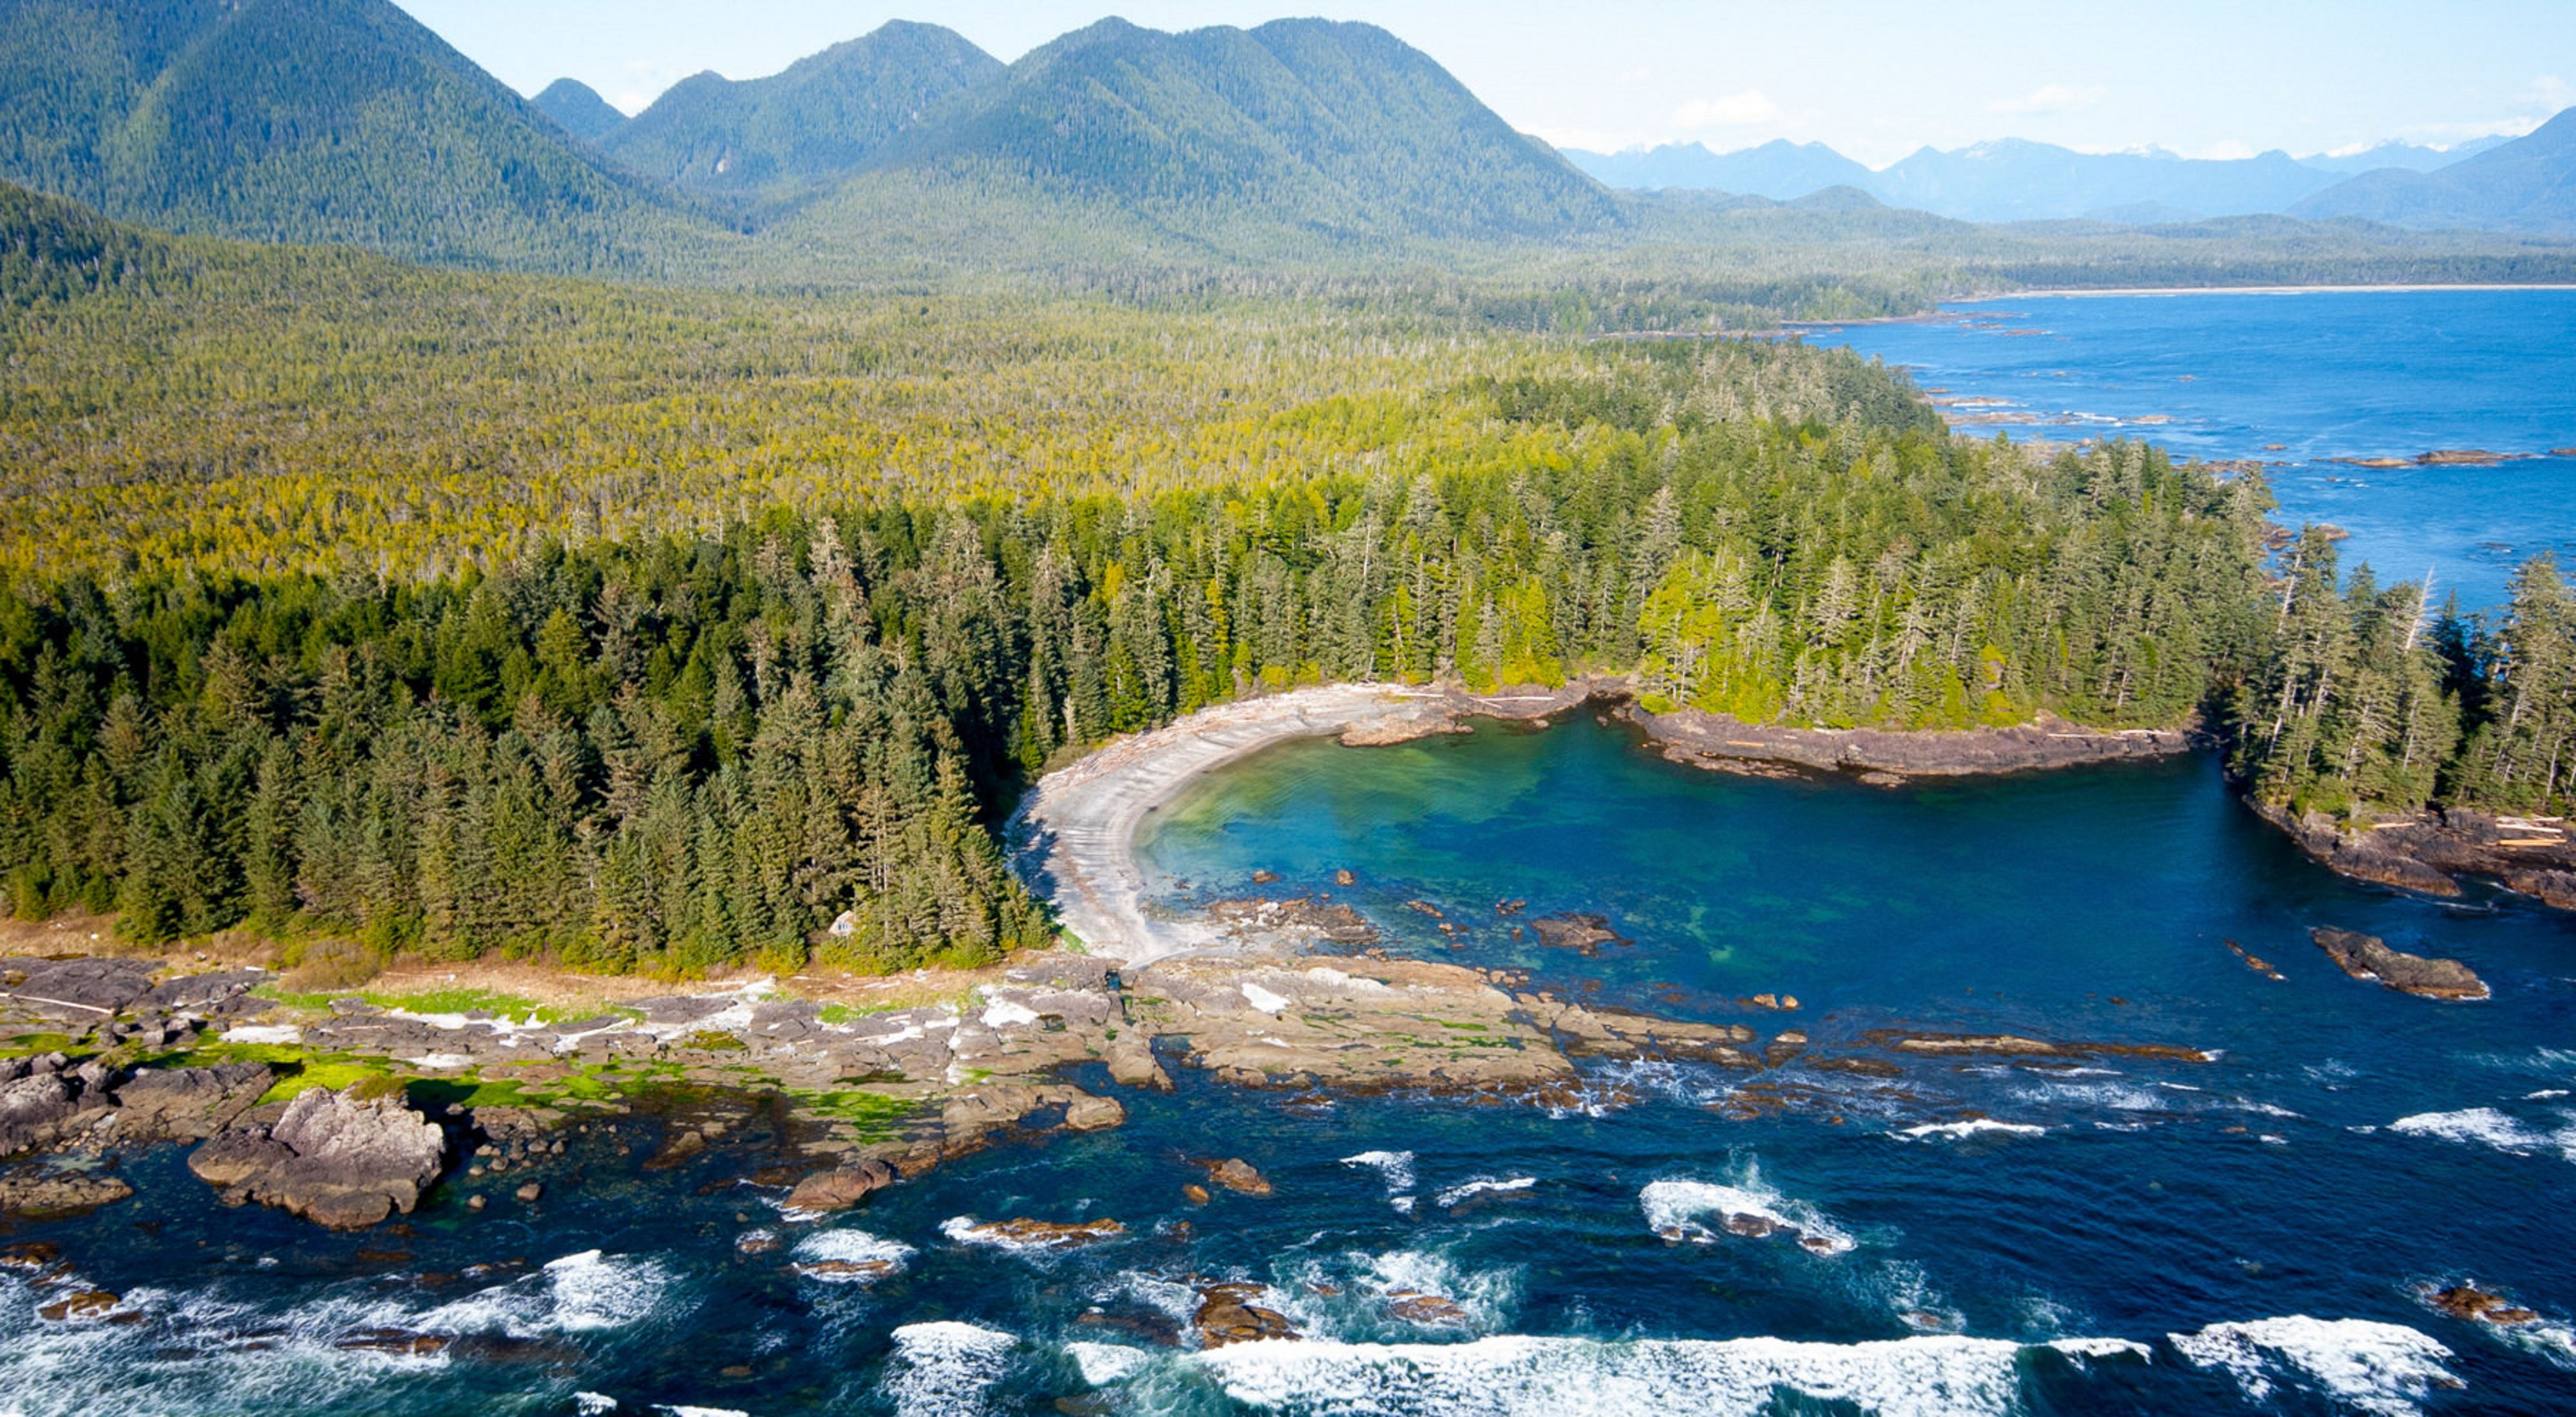 Vista aérea da região de Clayoquot Sound, no Canadá.